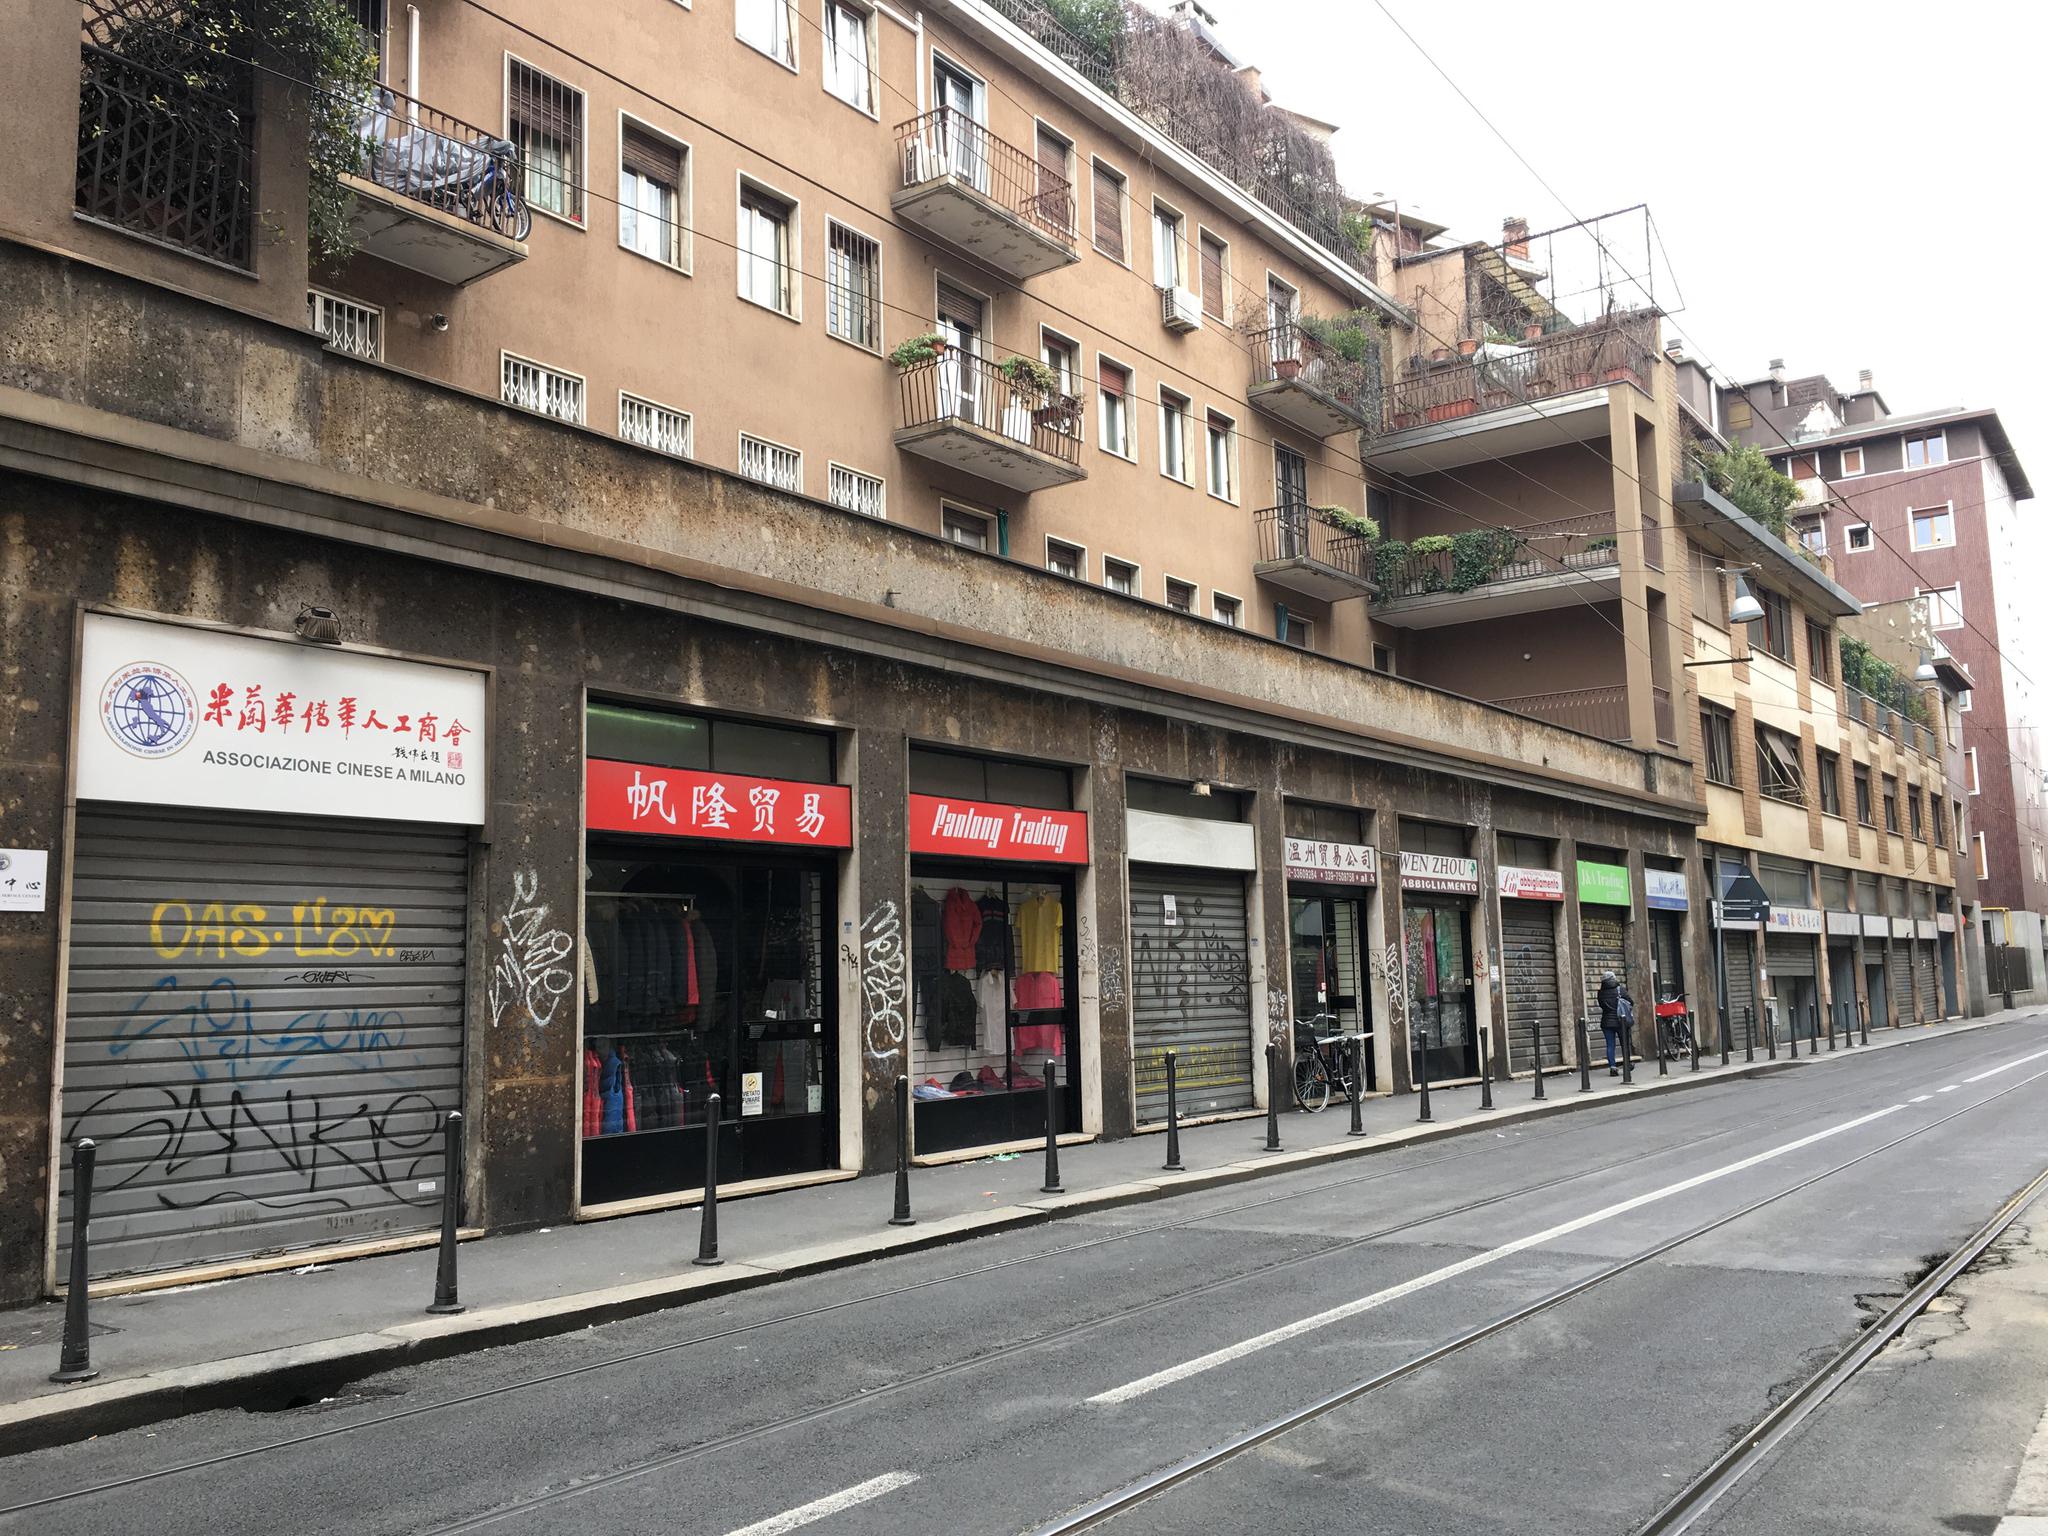 因为现在是春节,很多店铺都关门,唐人街上挂满了红色的灯笼.